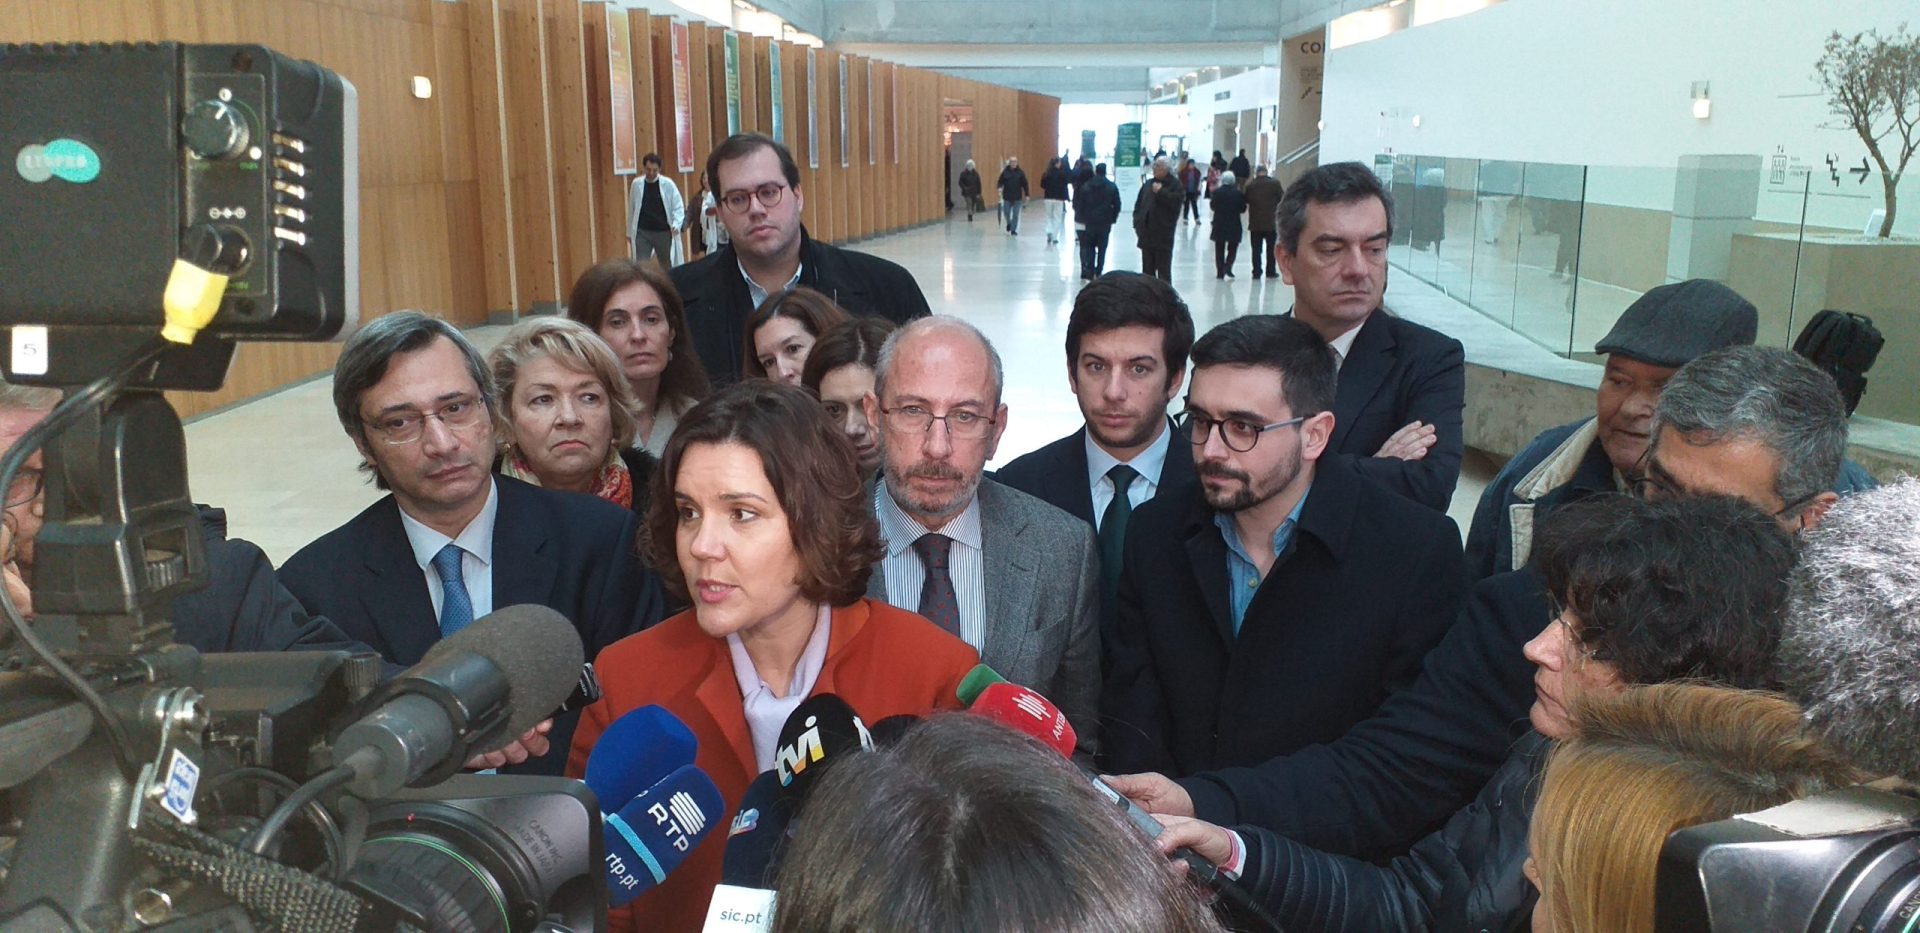 Deputados do CDS/PP visitam Hospital de Braga para se oporem ao fim da concessão de parceria publico-privada